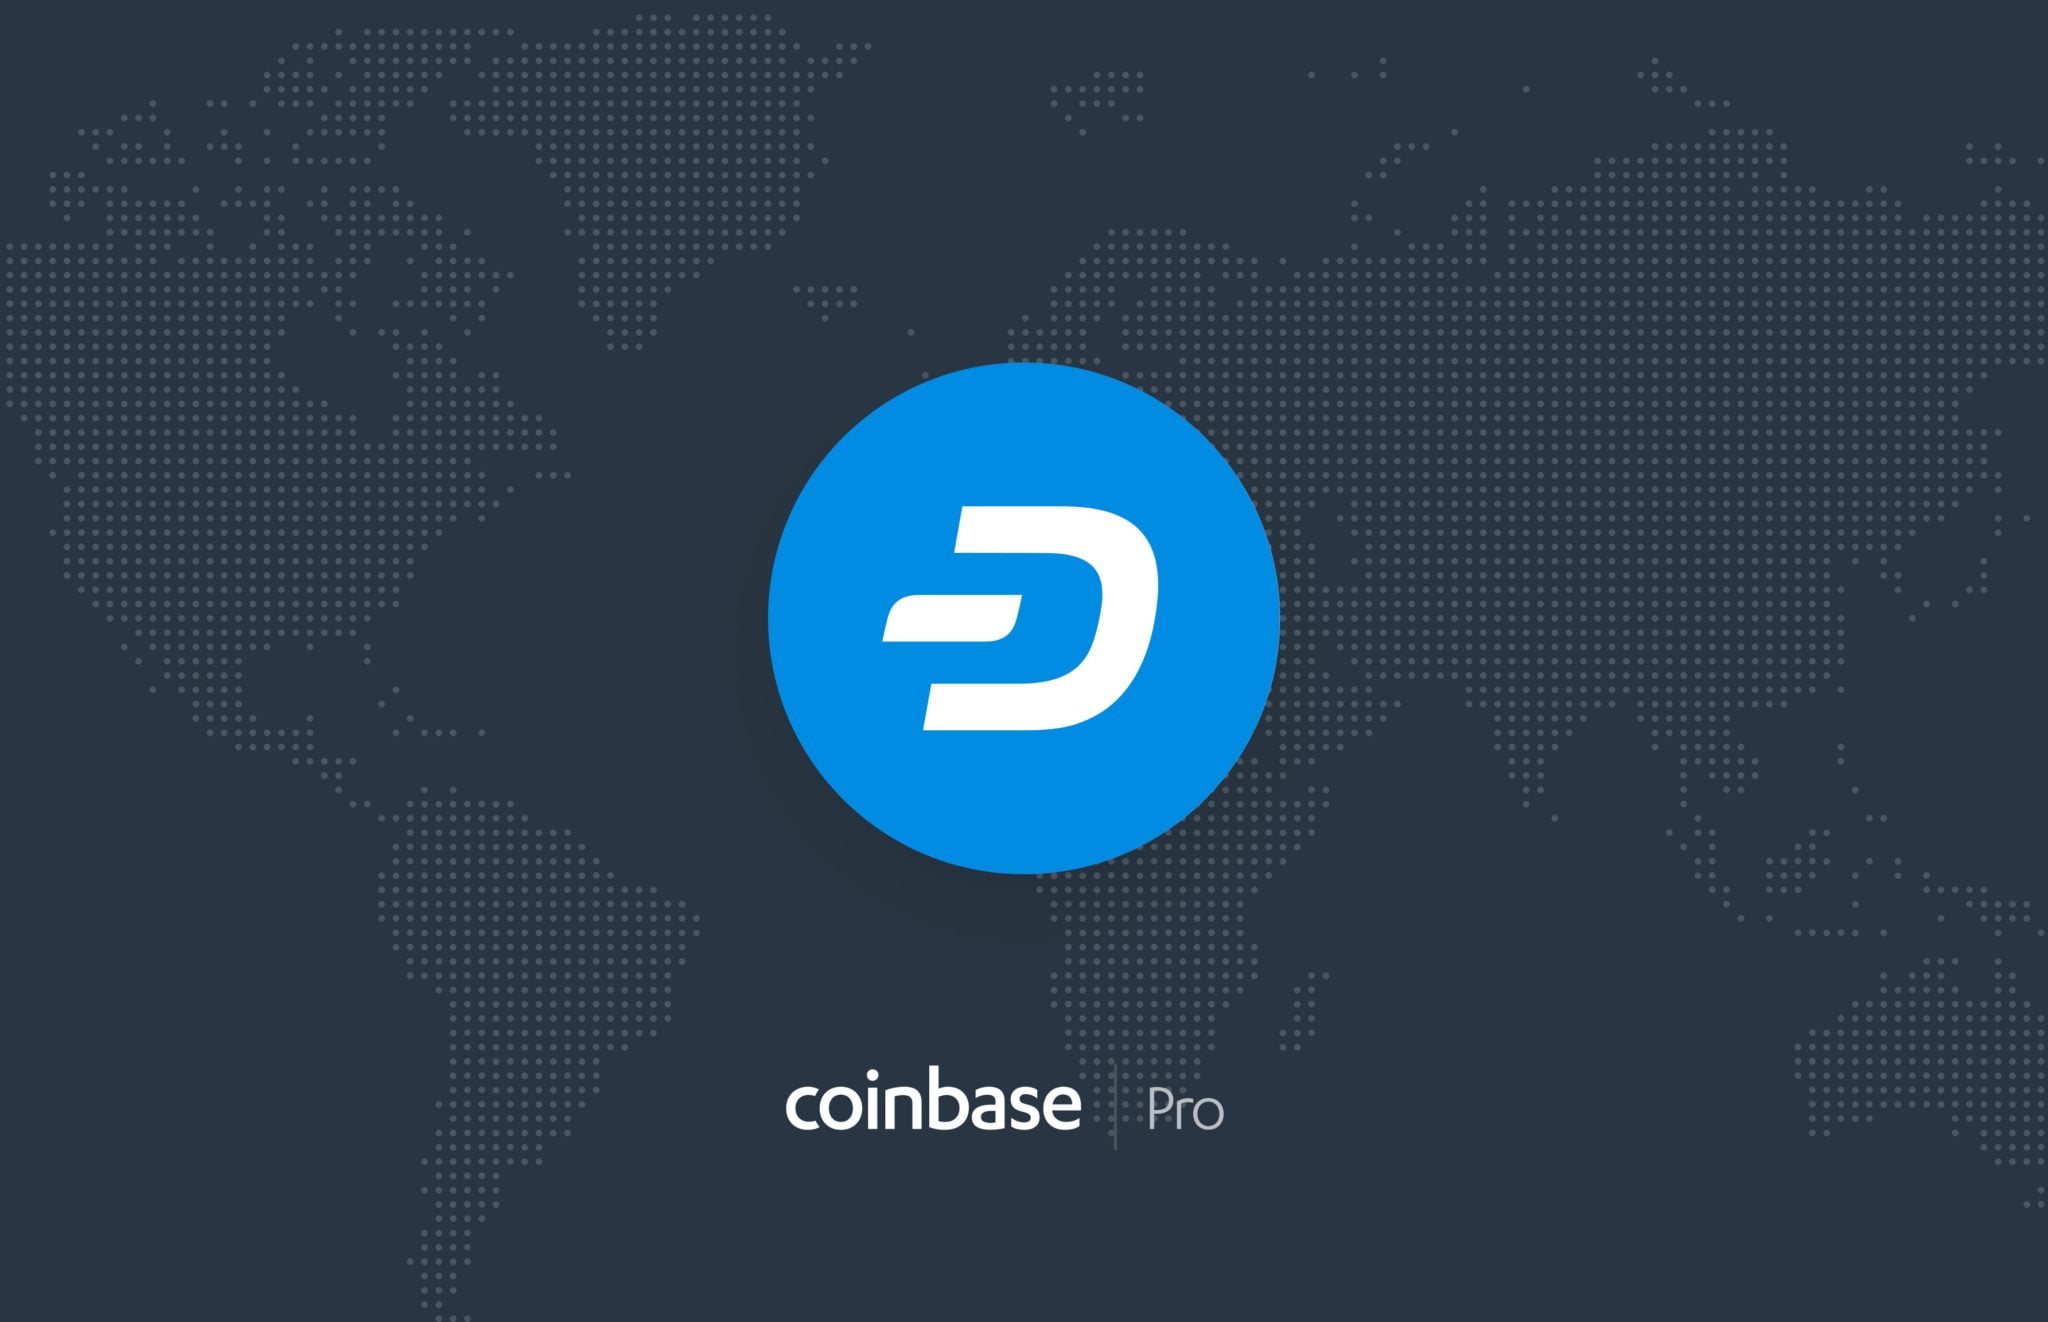 منصة Coinbase Pro تضيف التداول على عملة DASH - تقني نت العملات الرقمية